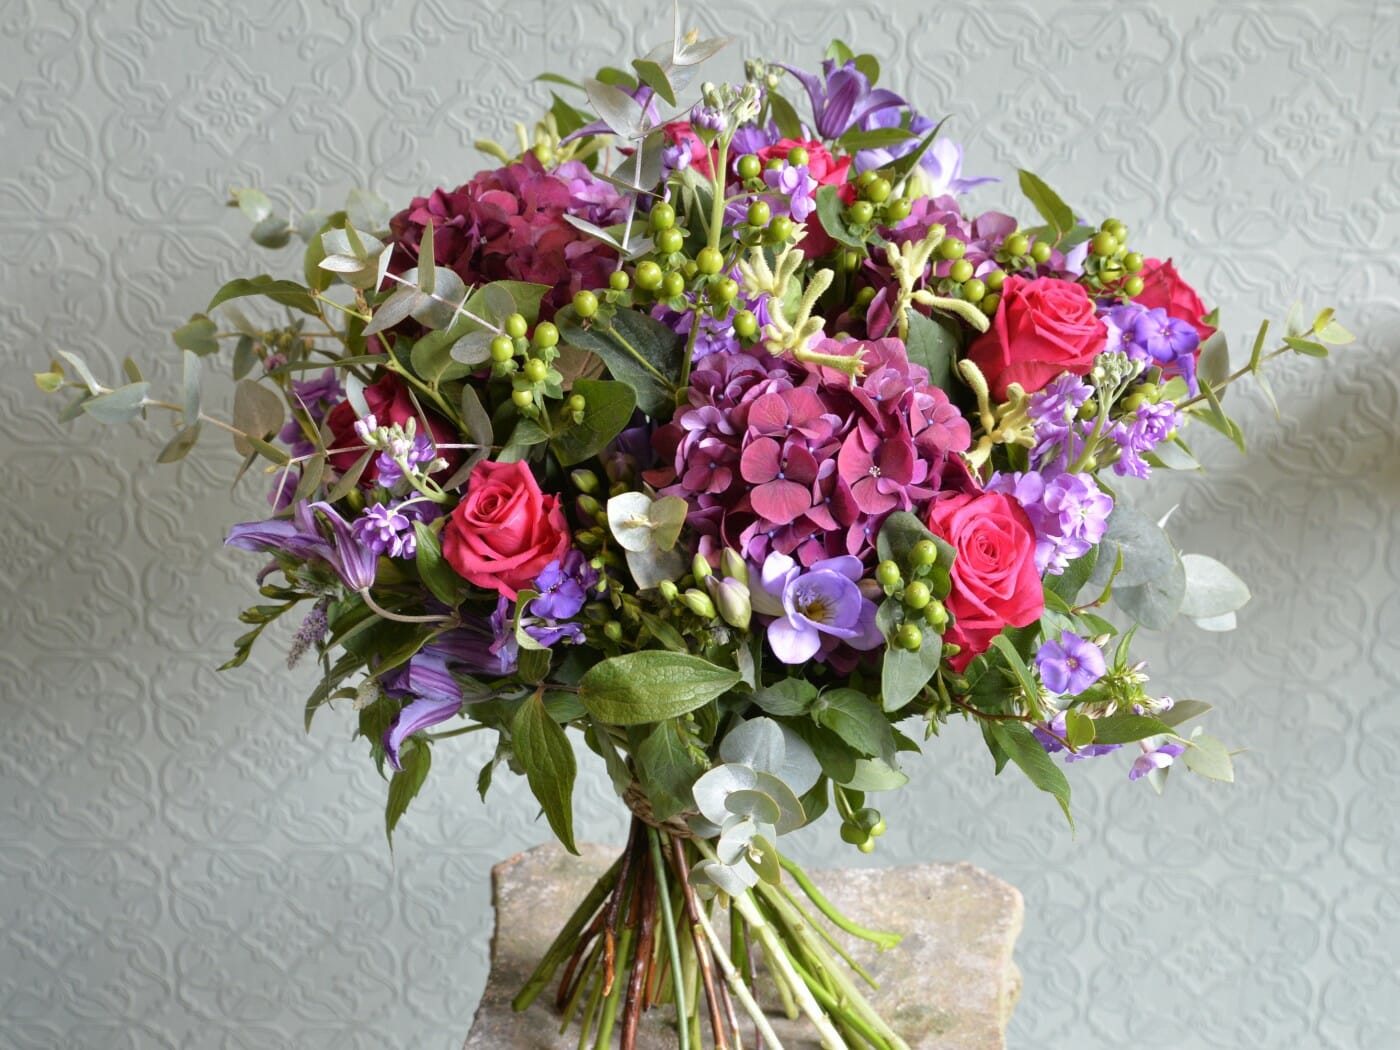 Seasonal Hand Tied Bouquet | Kensington Flowers